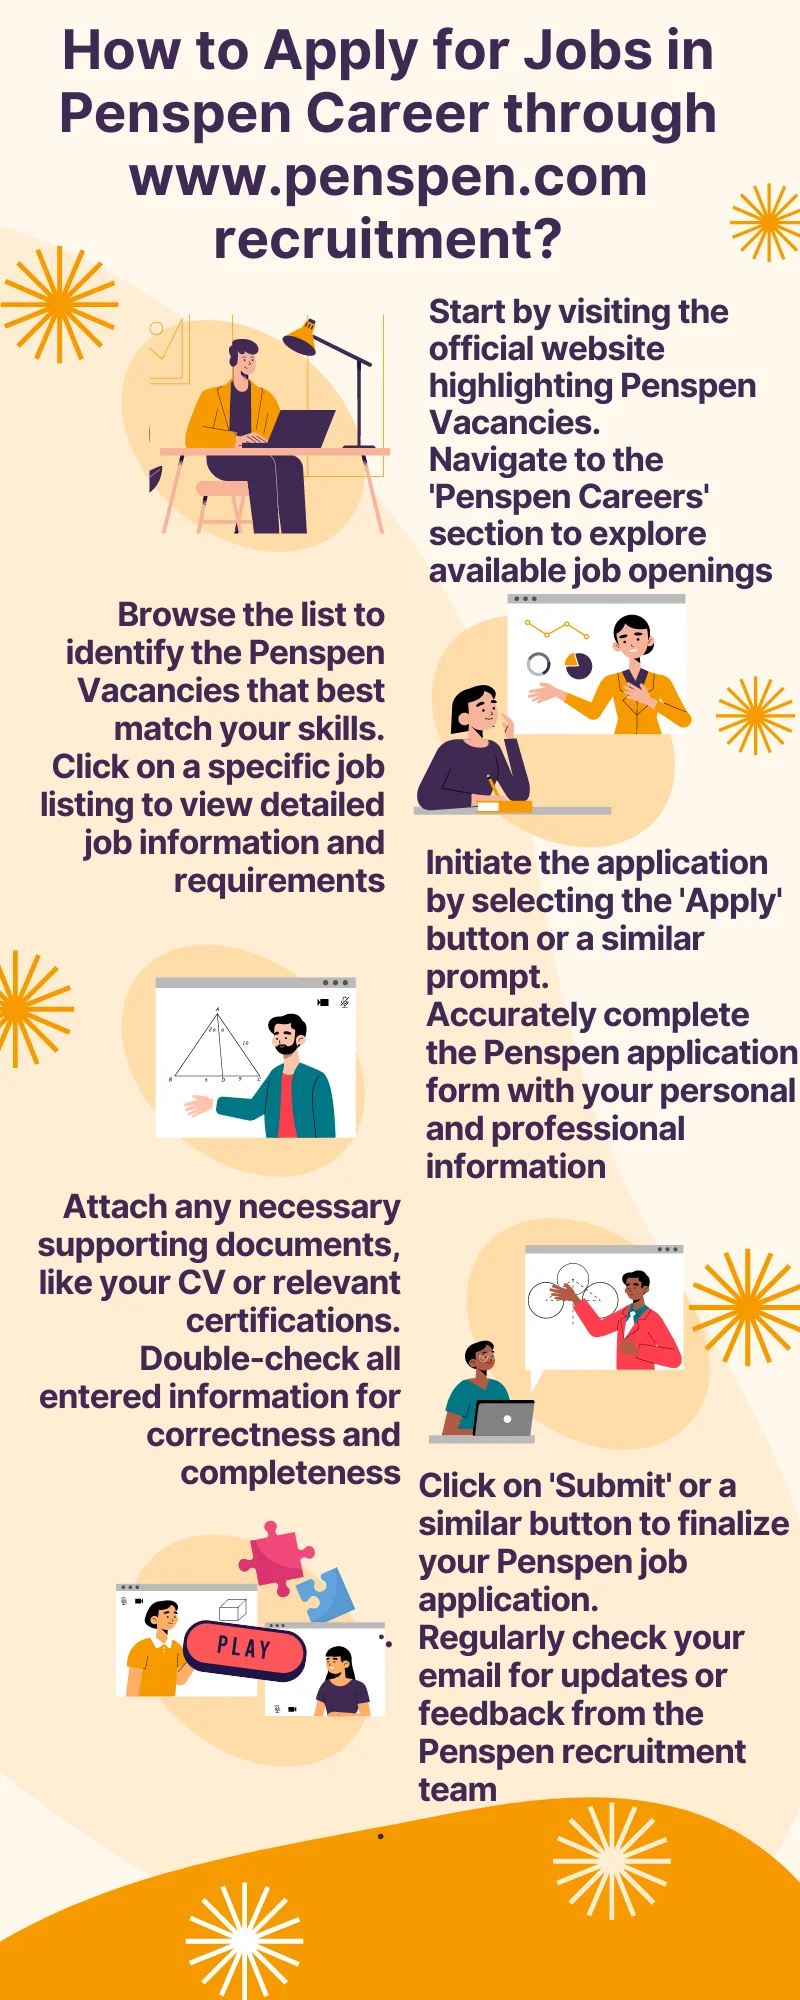 How to Apply for Jobs in Penspen Career through www.penspen.com recruitment?